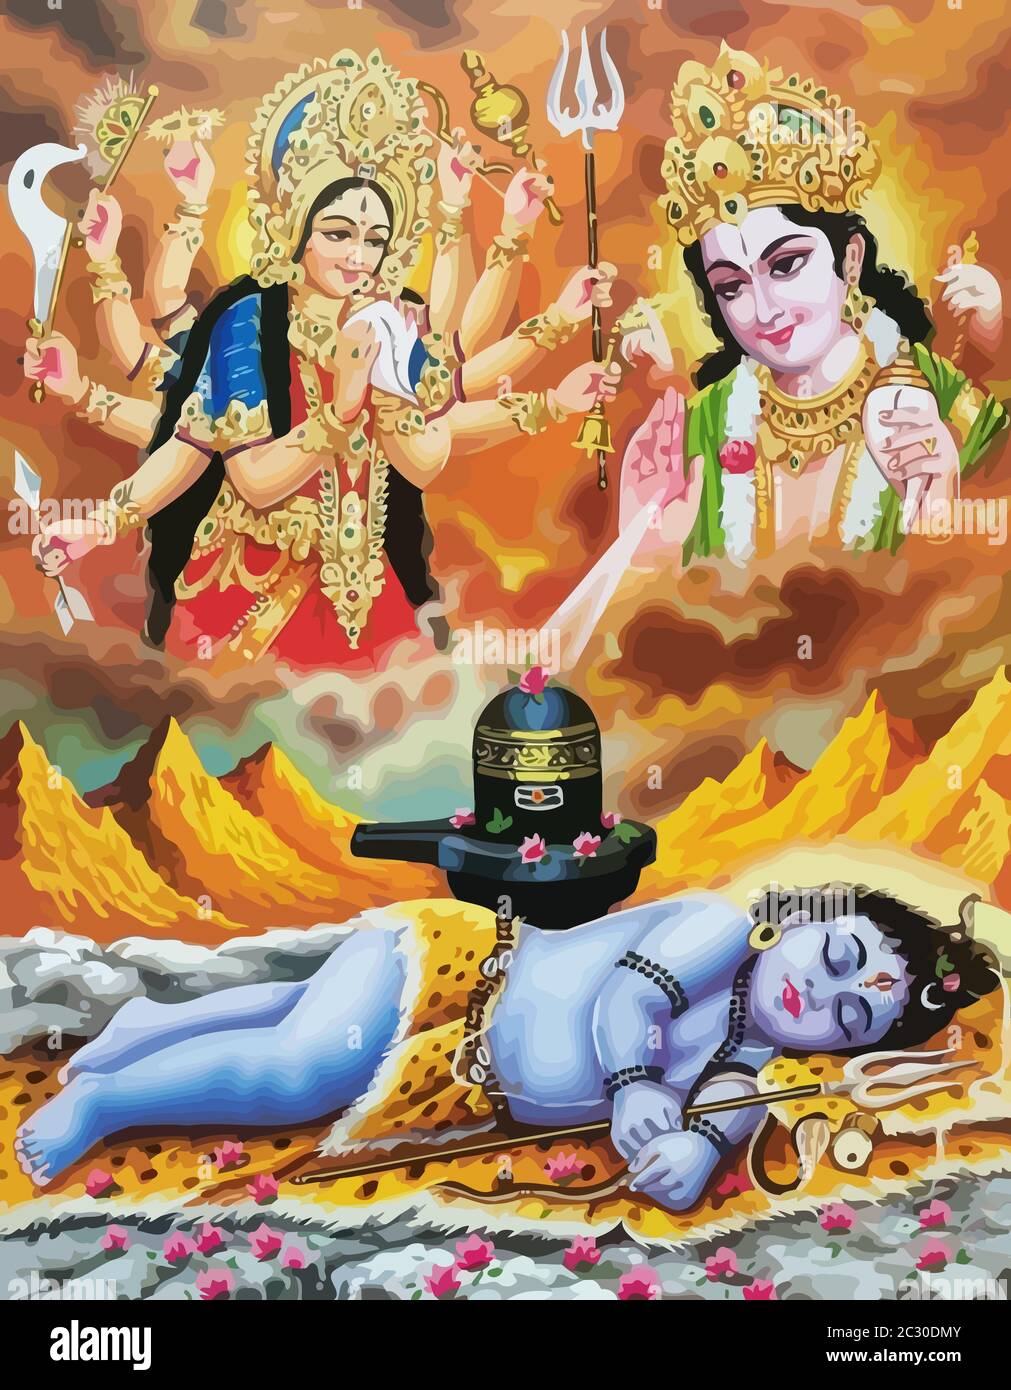 lord Surya and Durga baby Krishna mythology hinduism illustration ...